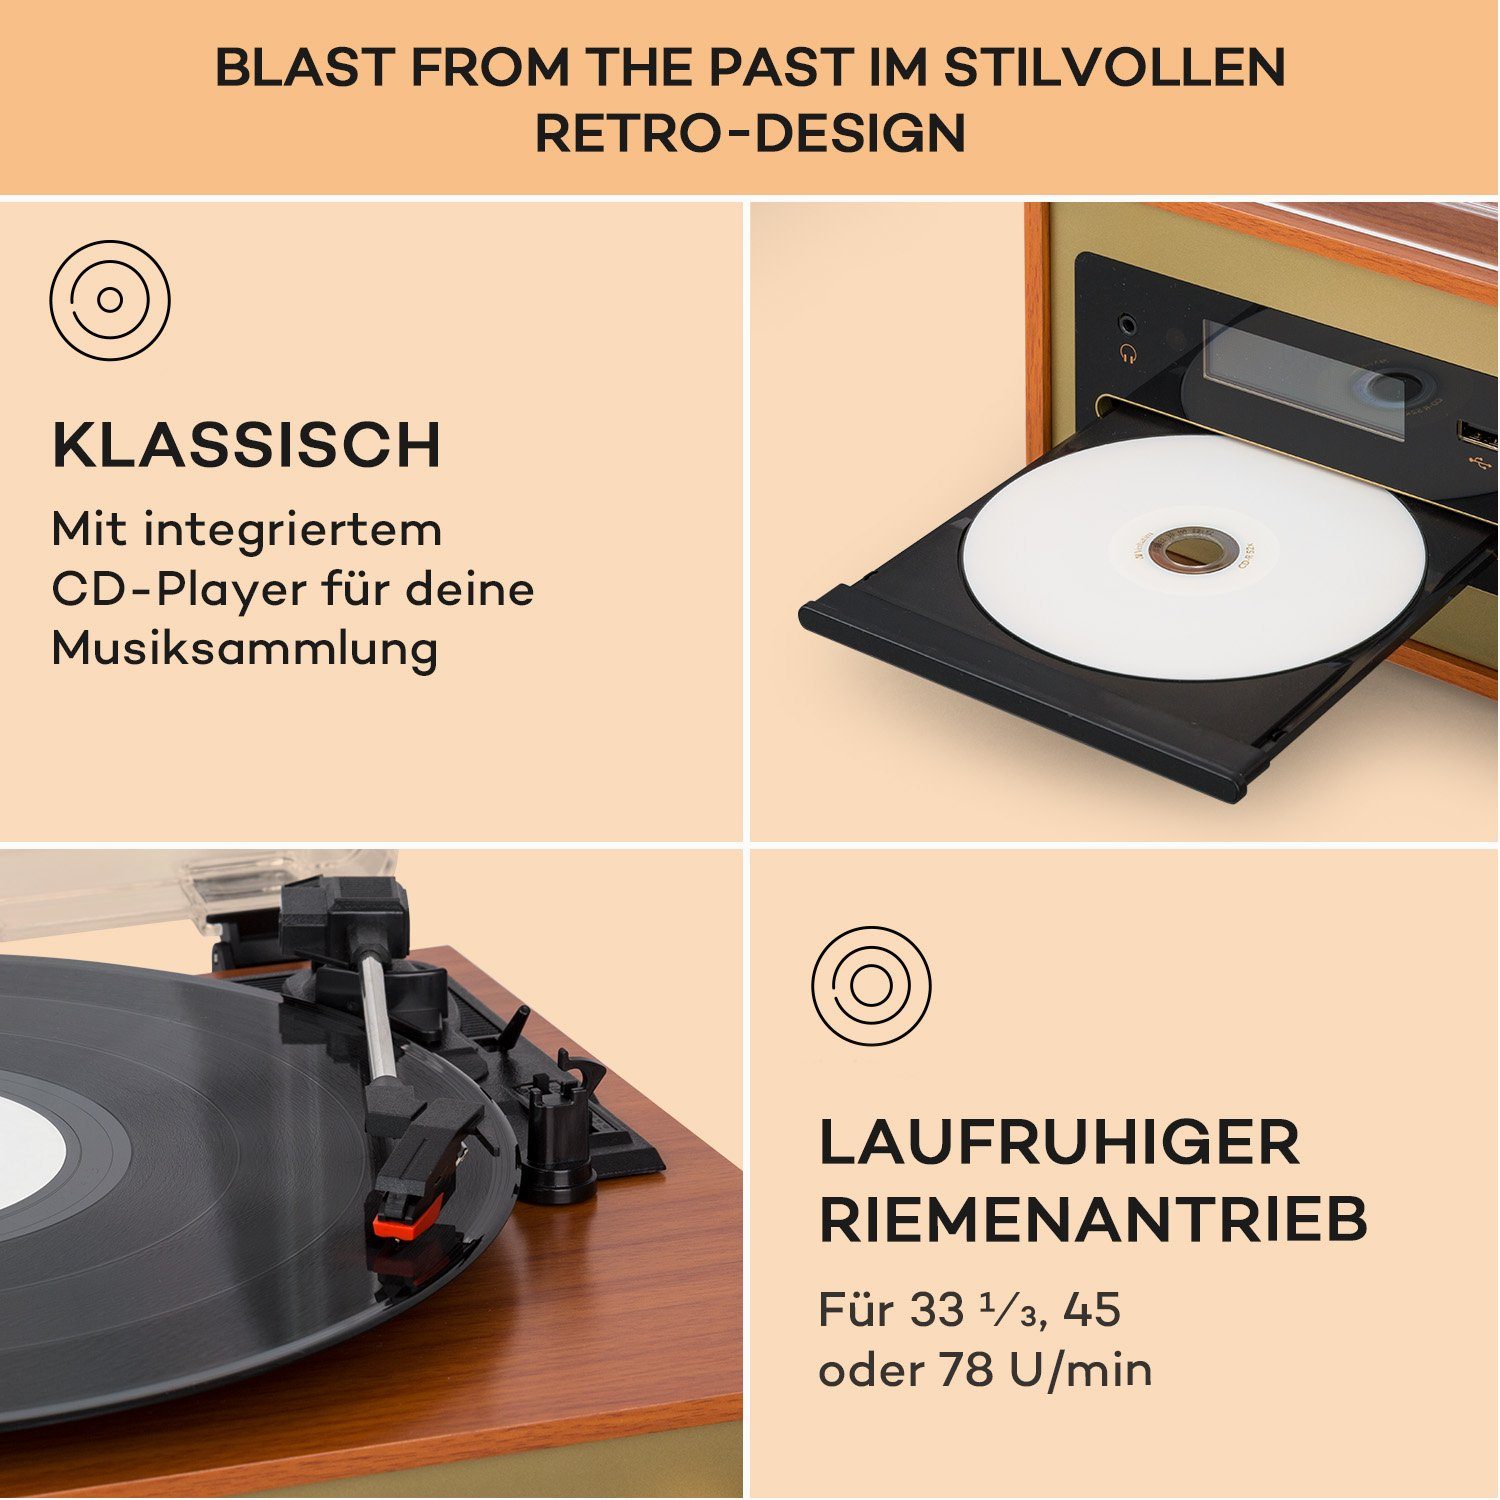 Bluetooth CD Radiotuner, Champagner) FM und Stereon DAB (DAB+ FM Auna Oxford 20 W, Player Stereoanlage SE Vinyl